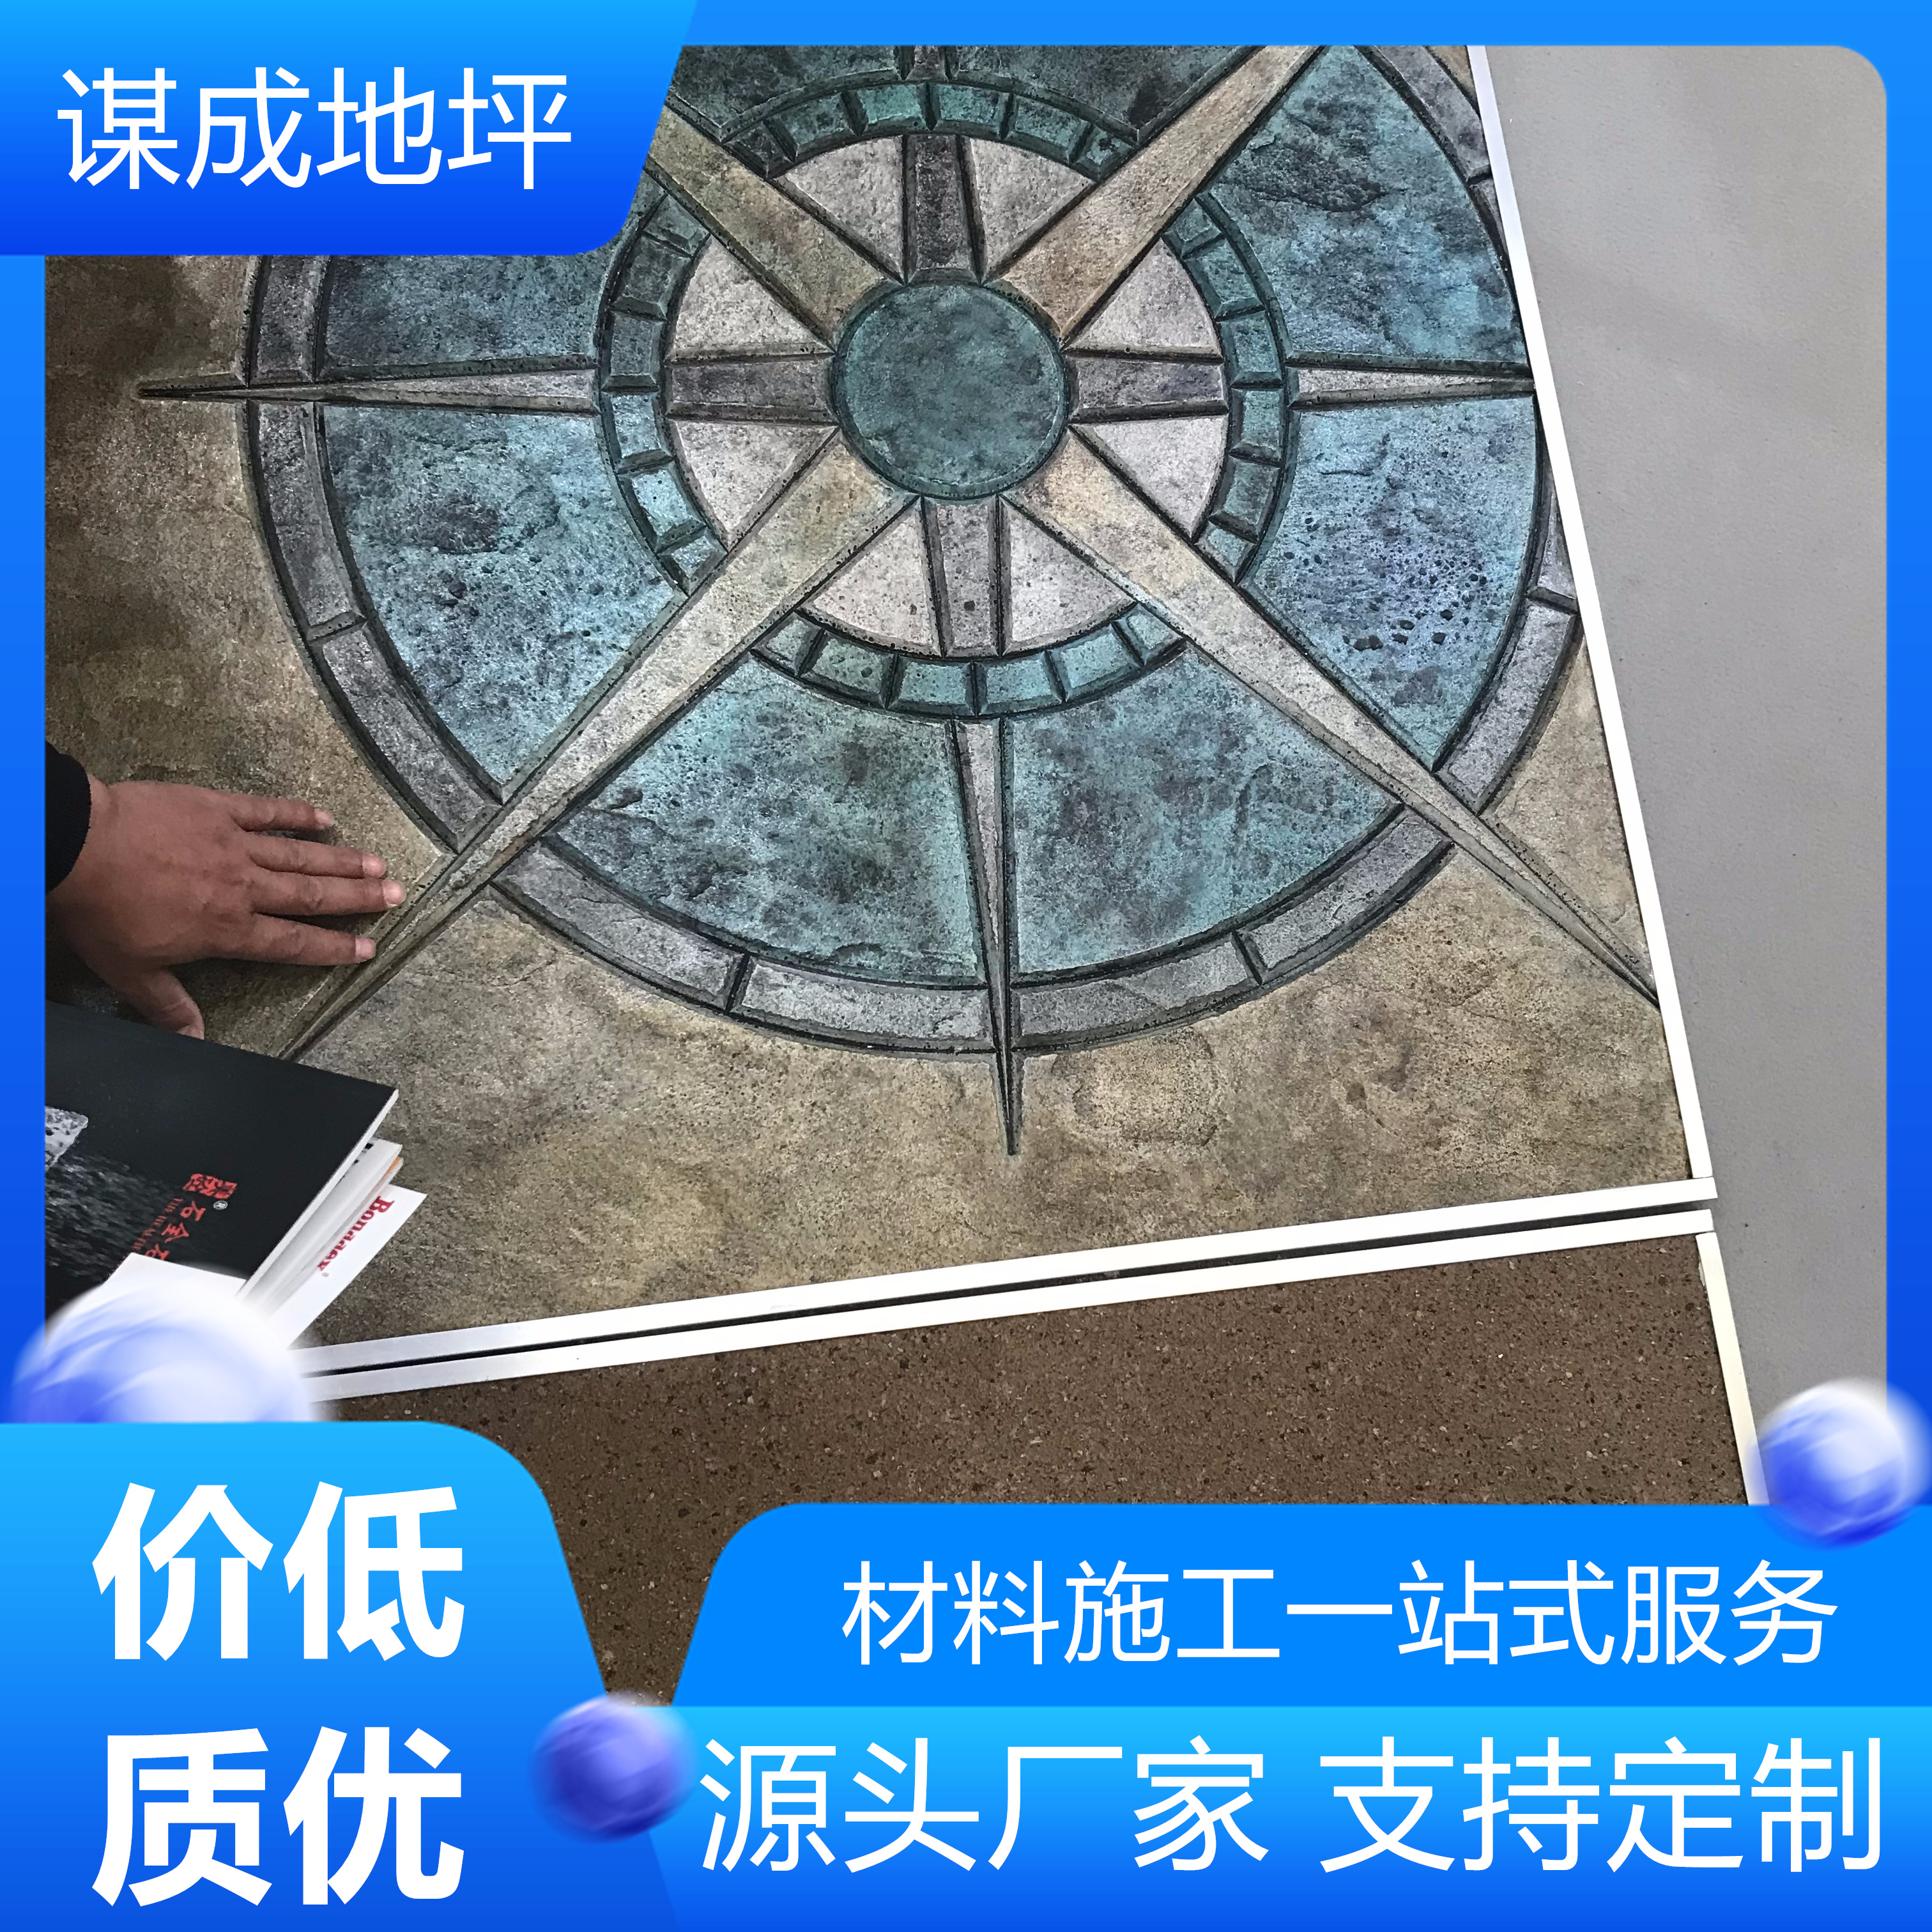 蚌埠淮南混凝土刻纹地坪一体化施工